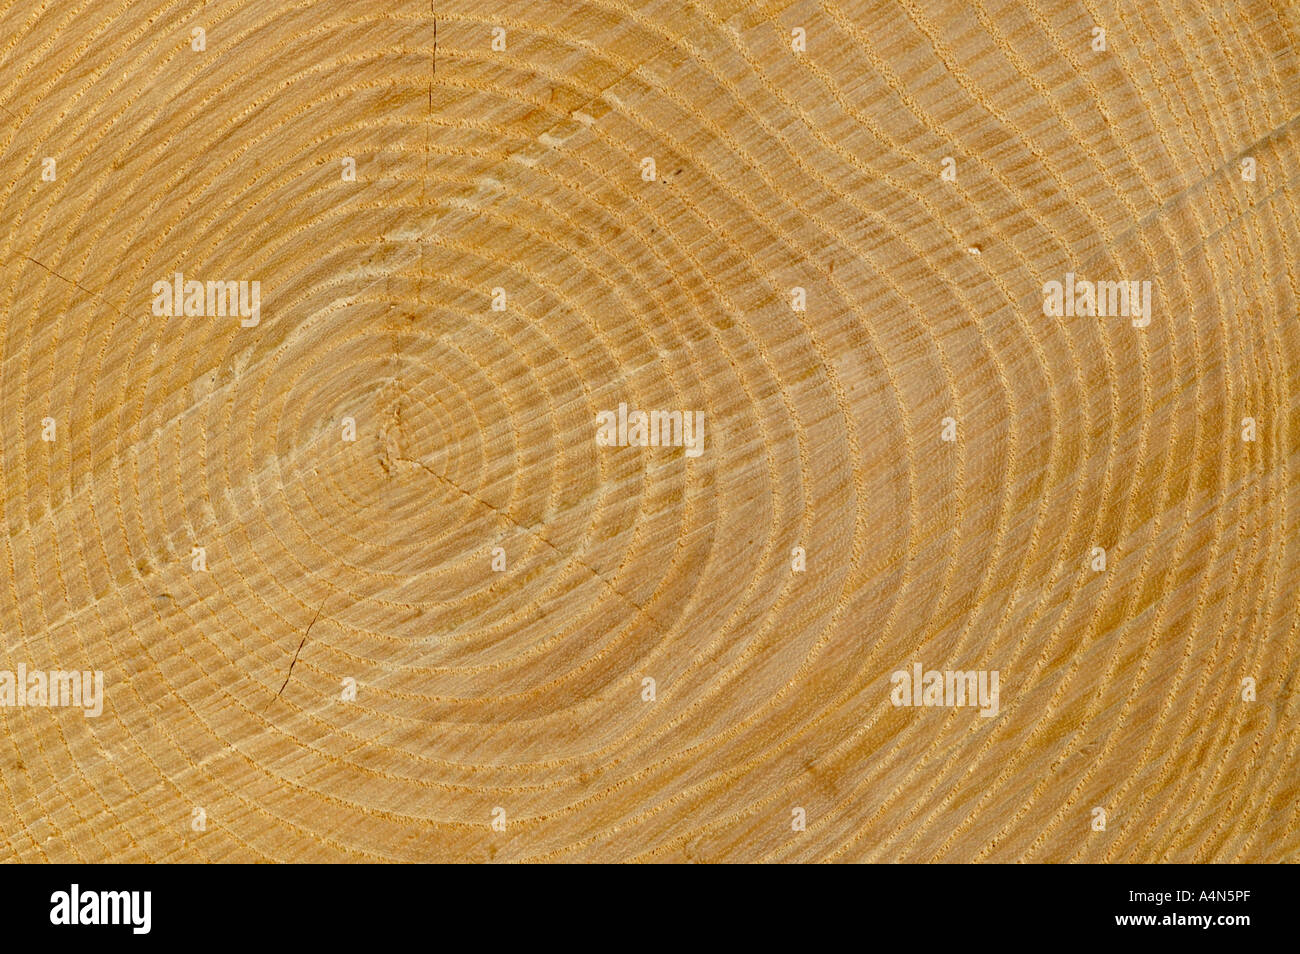 Les anneaux de croissance section transversale du tronc de l'arbre Banque D'Images